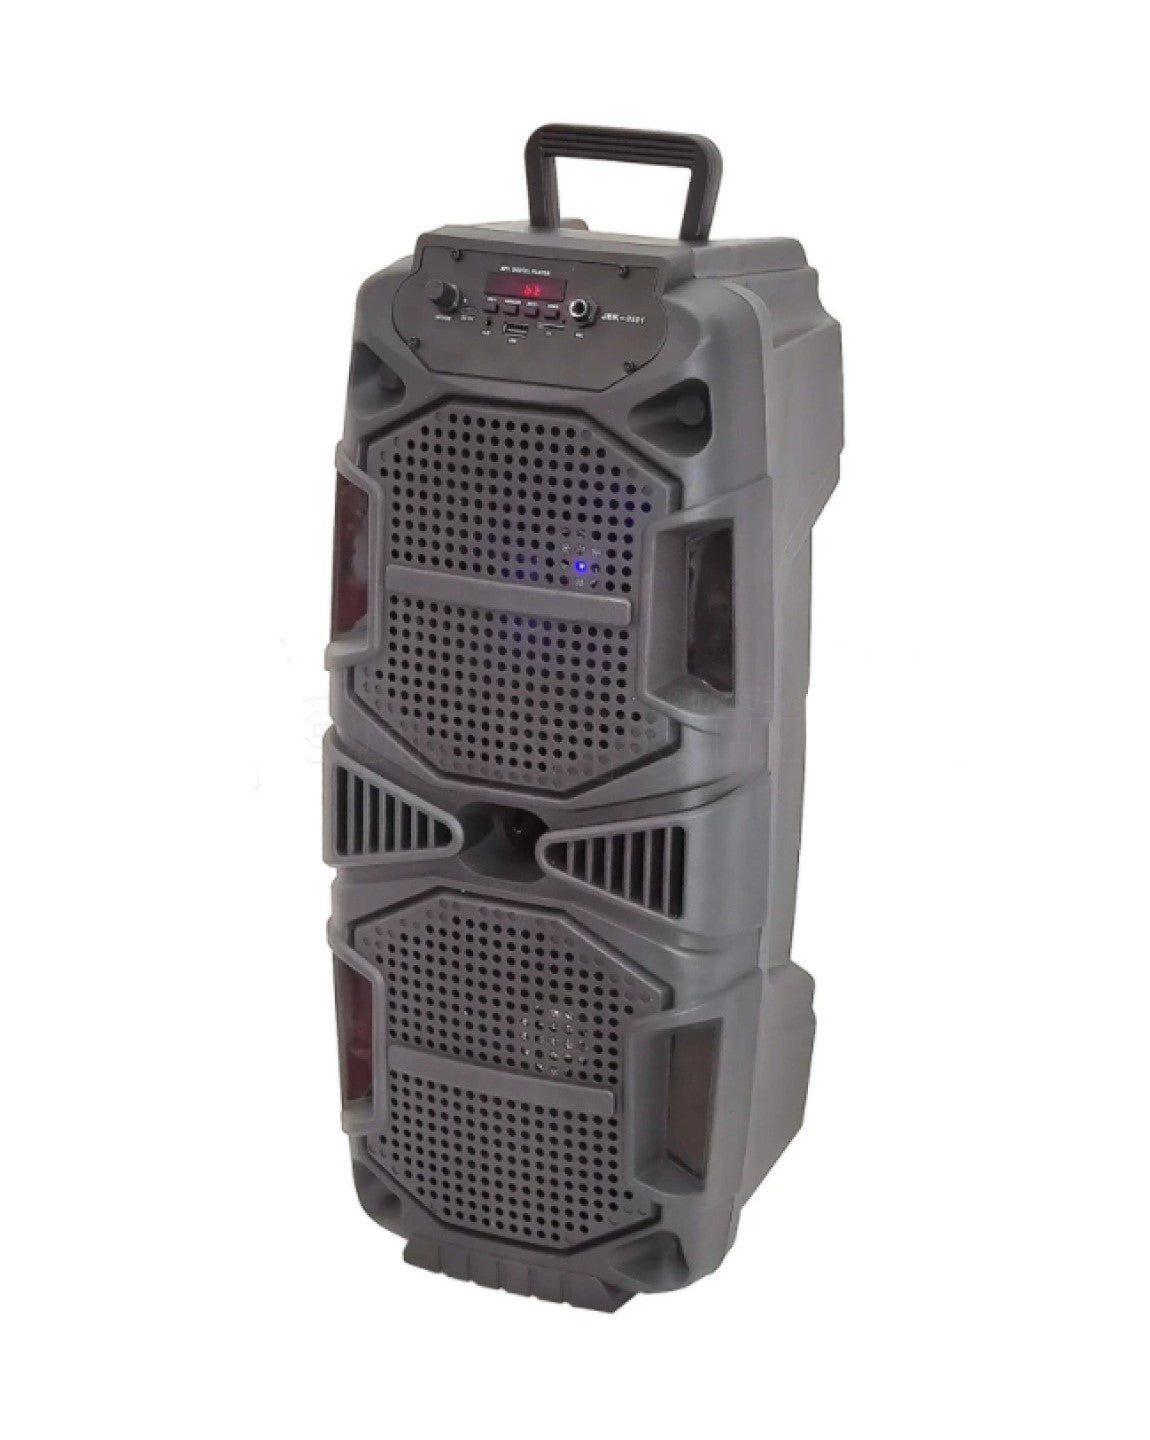 Wireless Party Speaker (JBK-8501)